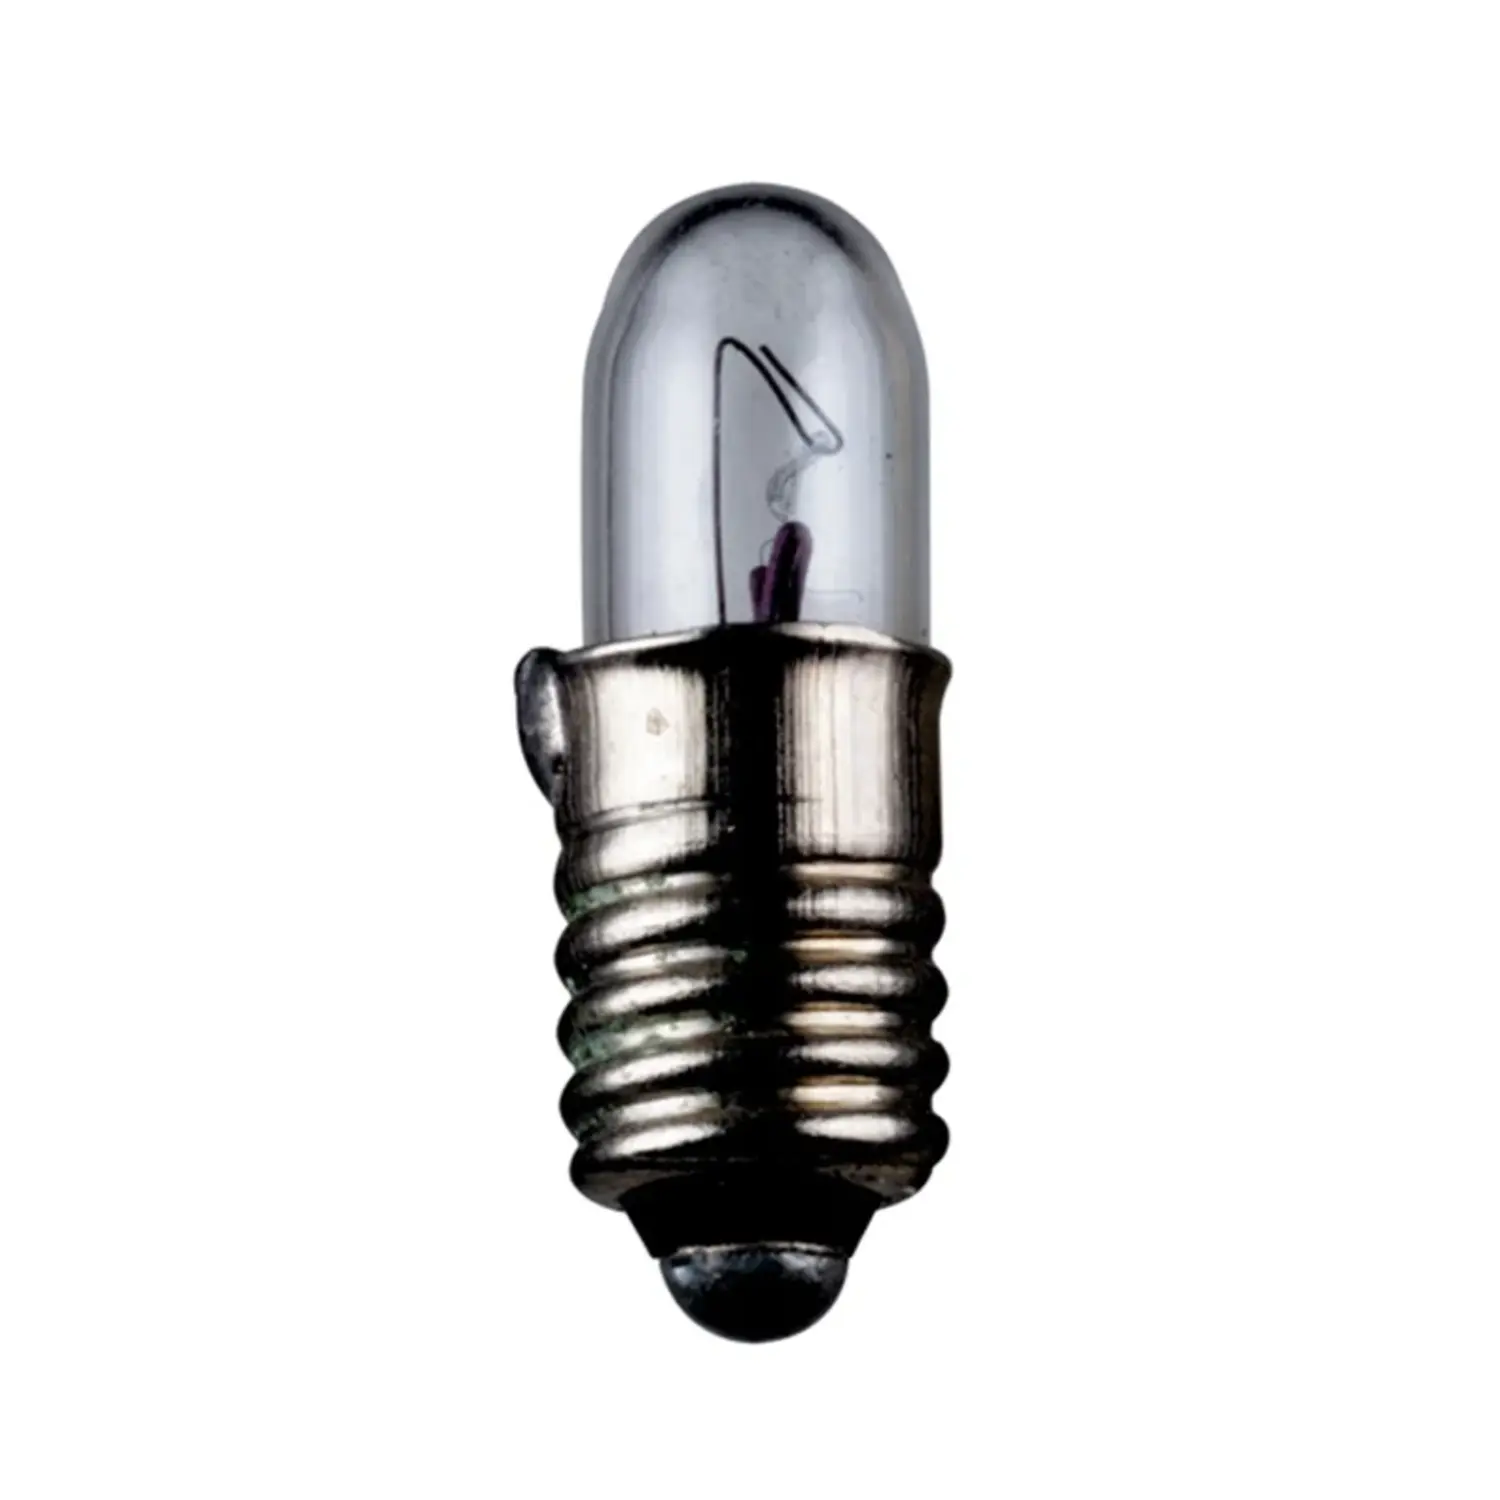 immagine del prodotto lampadina in miniatura modellismo treno presepe natale e5.5 0,56 watt 14 volt